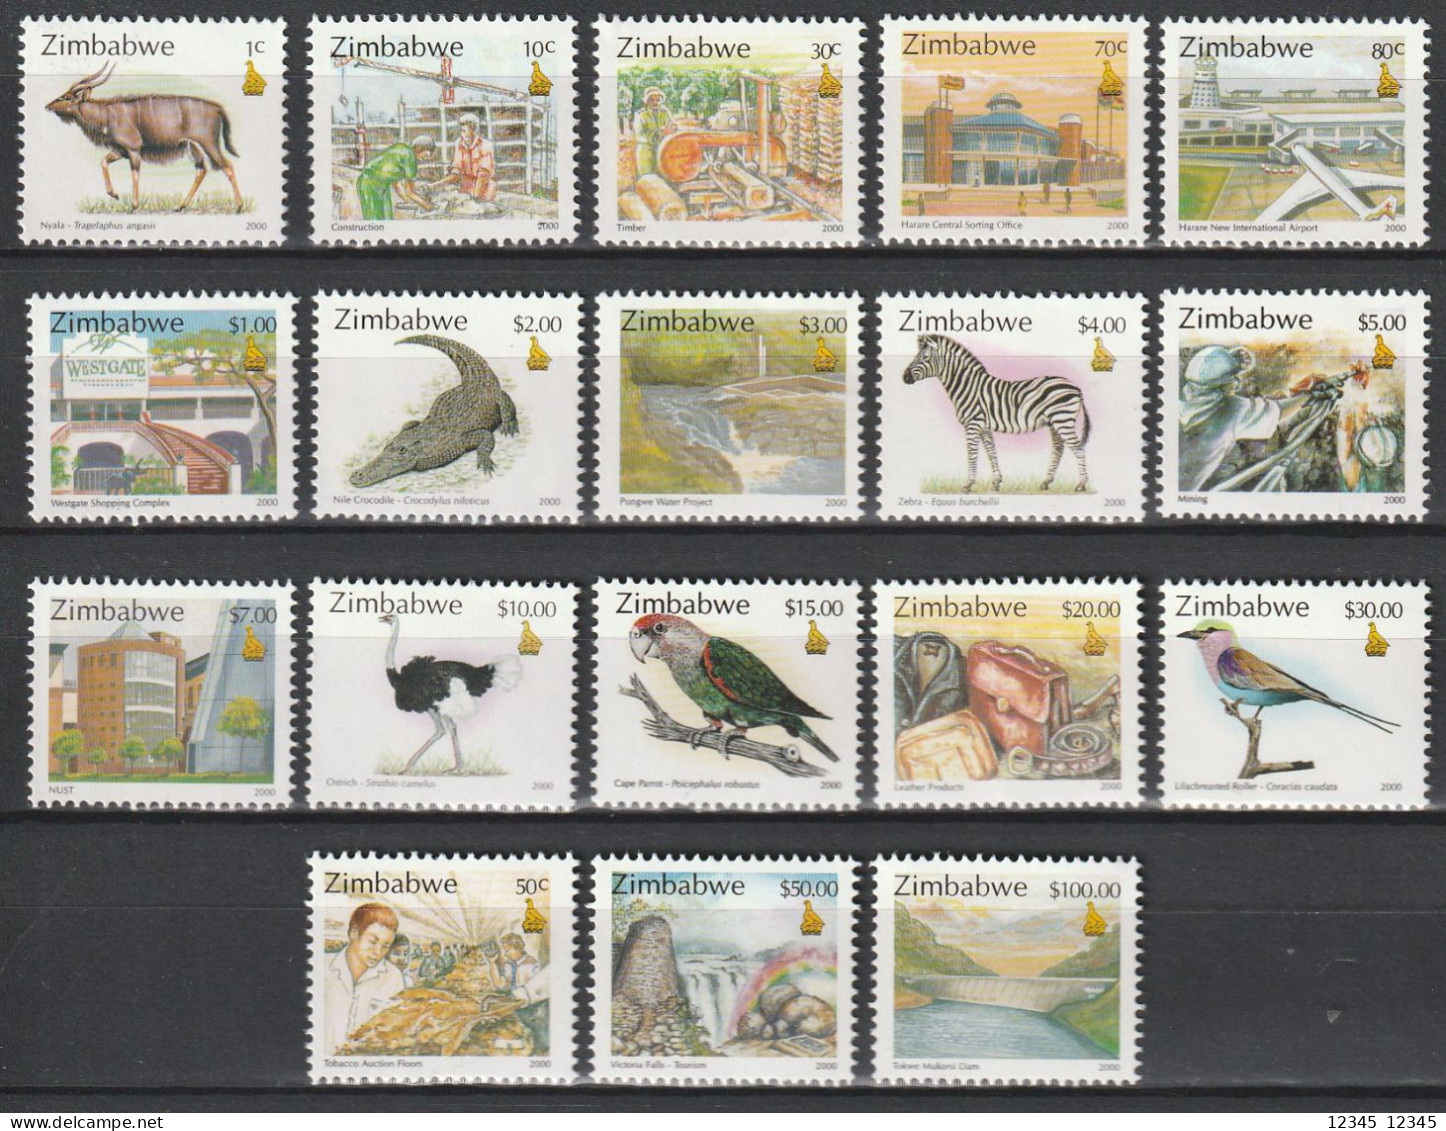 Zimbabwe 2000, Postfris MNH, Animals, Industry And Attractions. - Zimbabwe (1980-...)